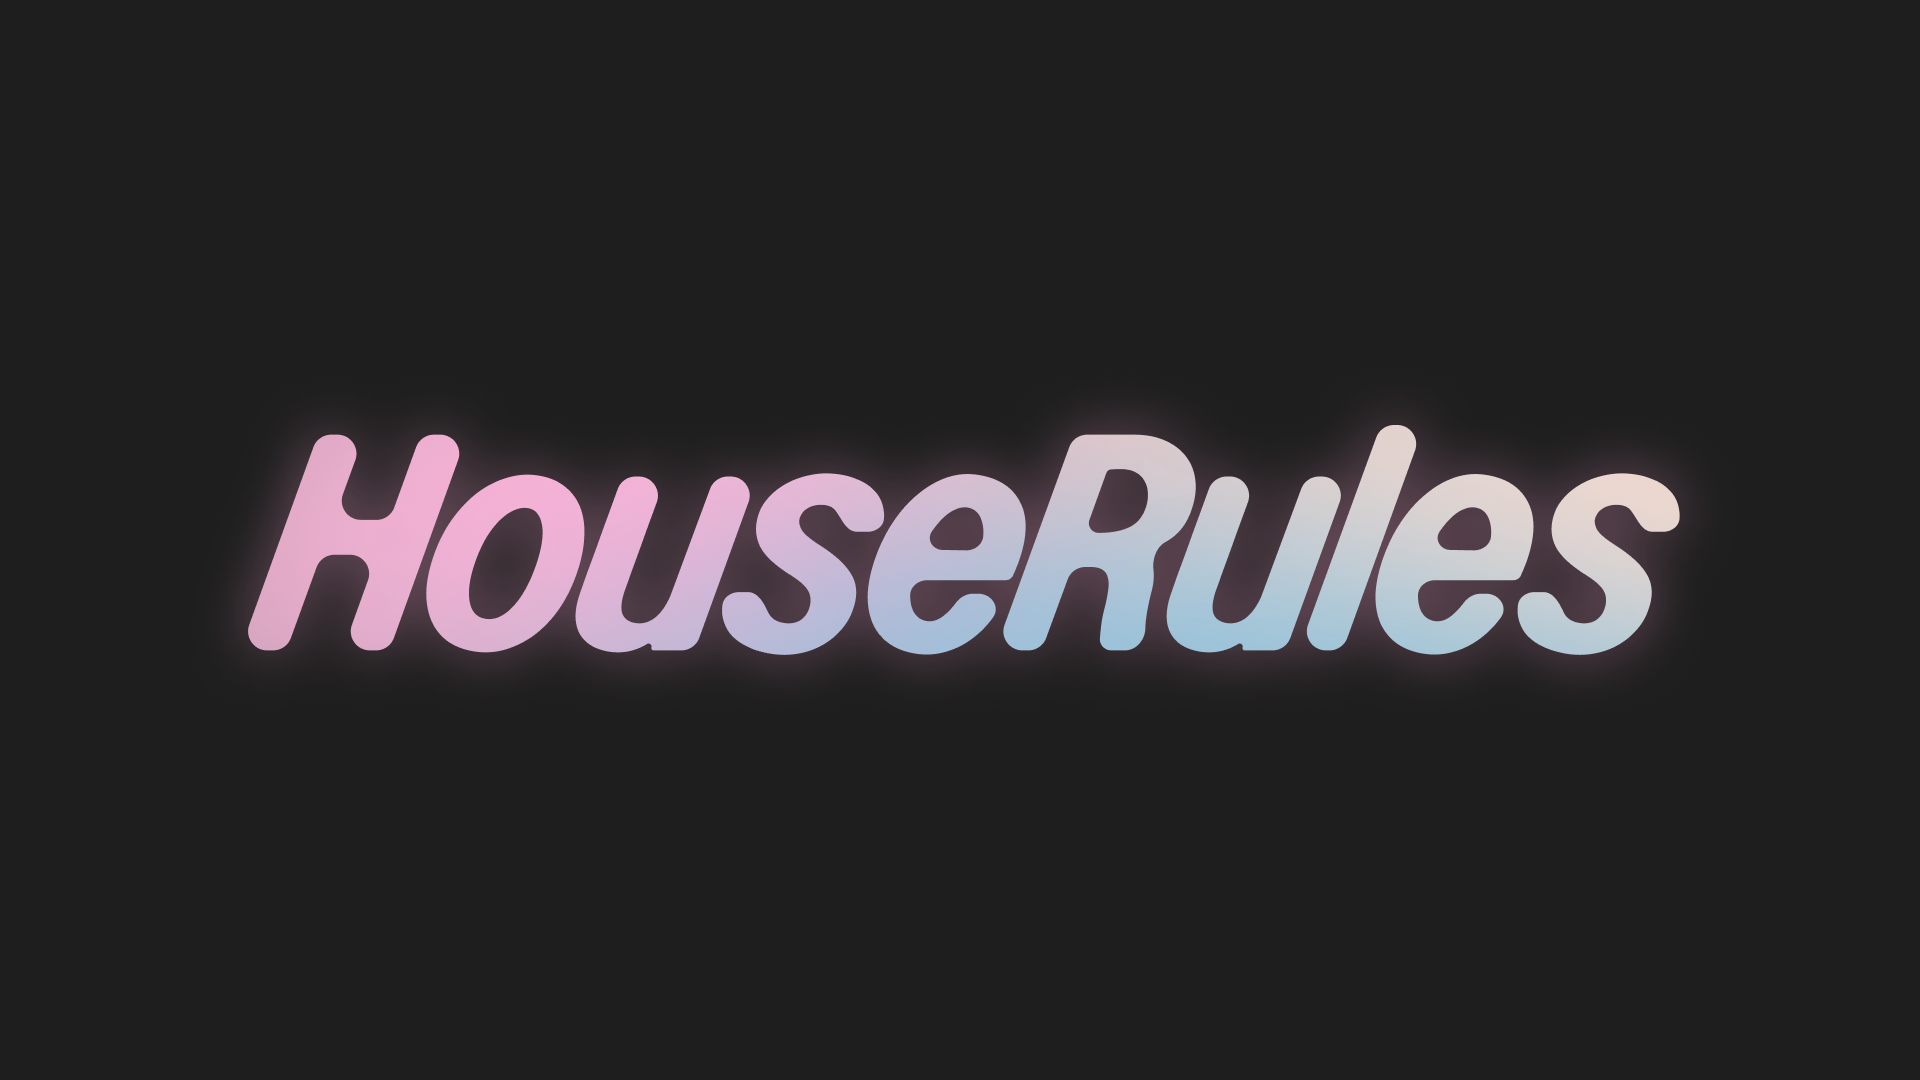 HouseRules wordmark